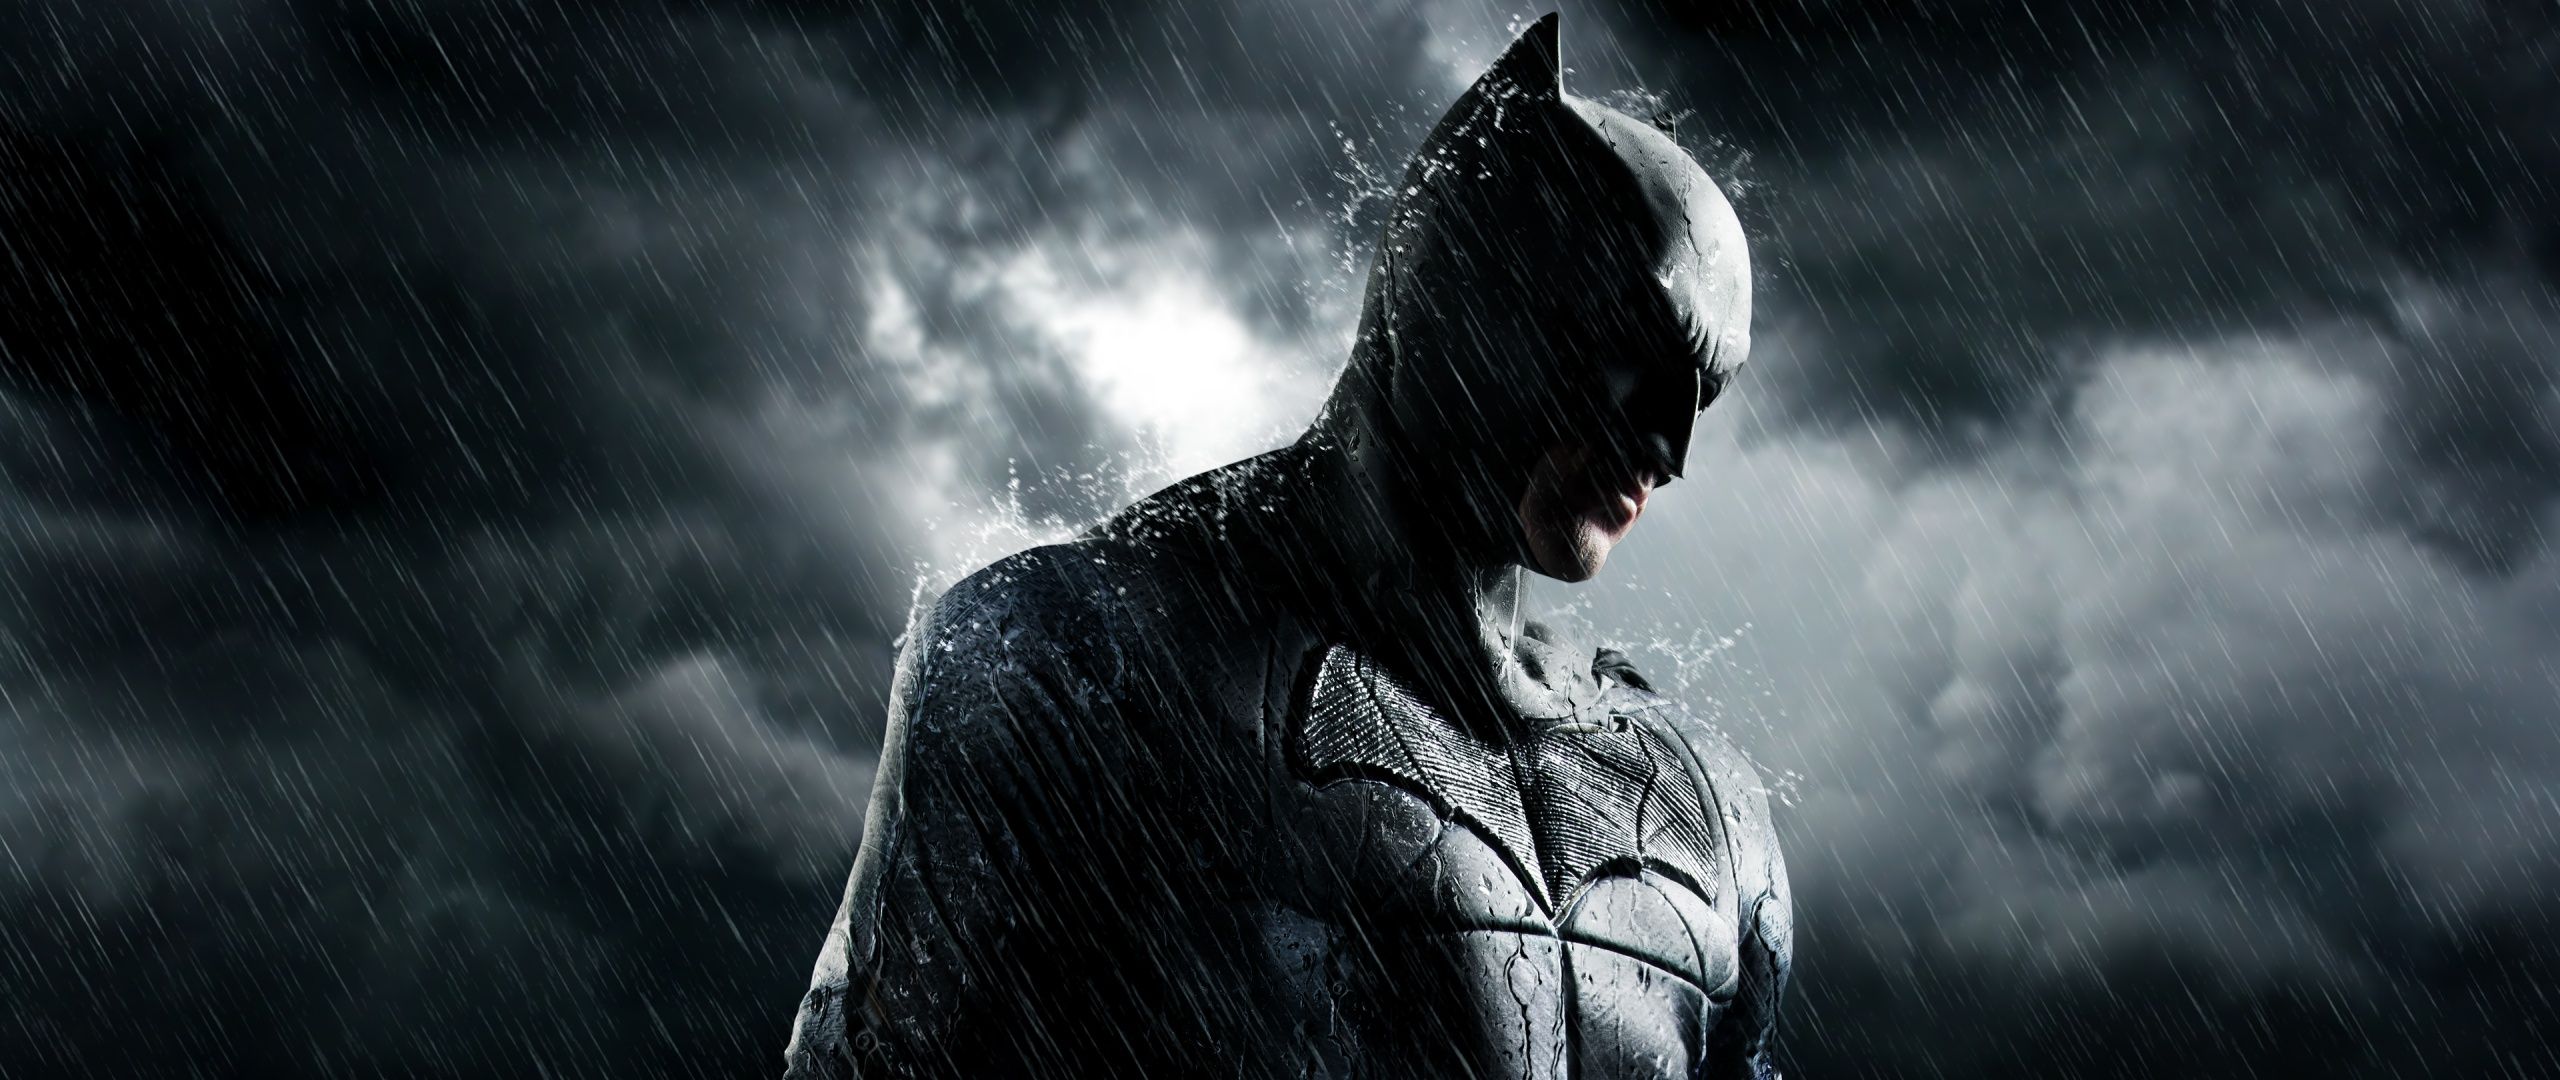  Batman Hintergrundbild 2560x1080. Batman Wallpaper 4K, DC Superheroes, Graphics CGI